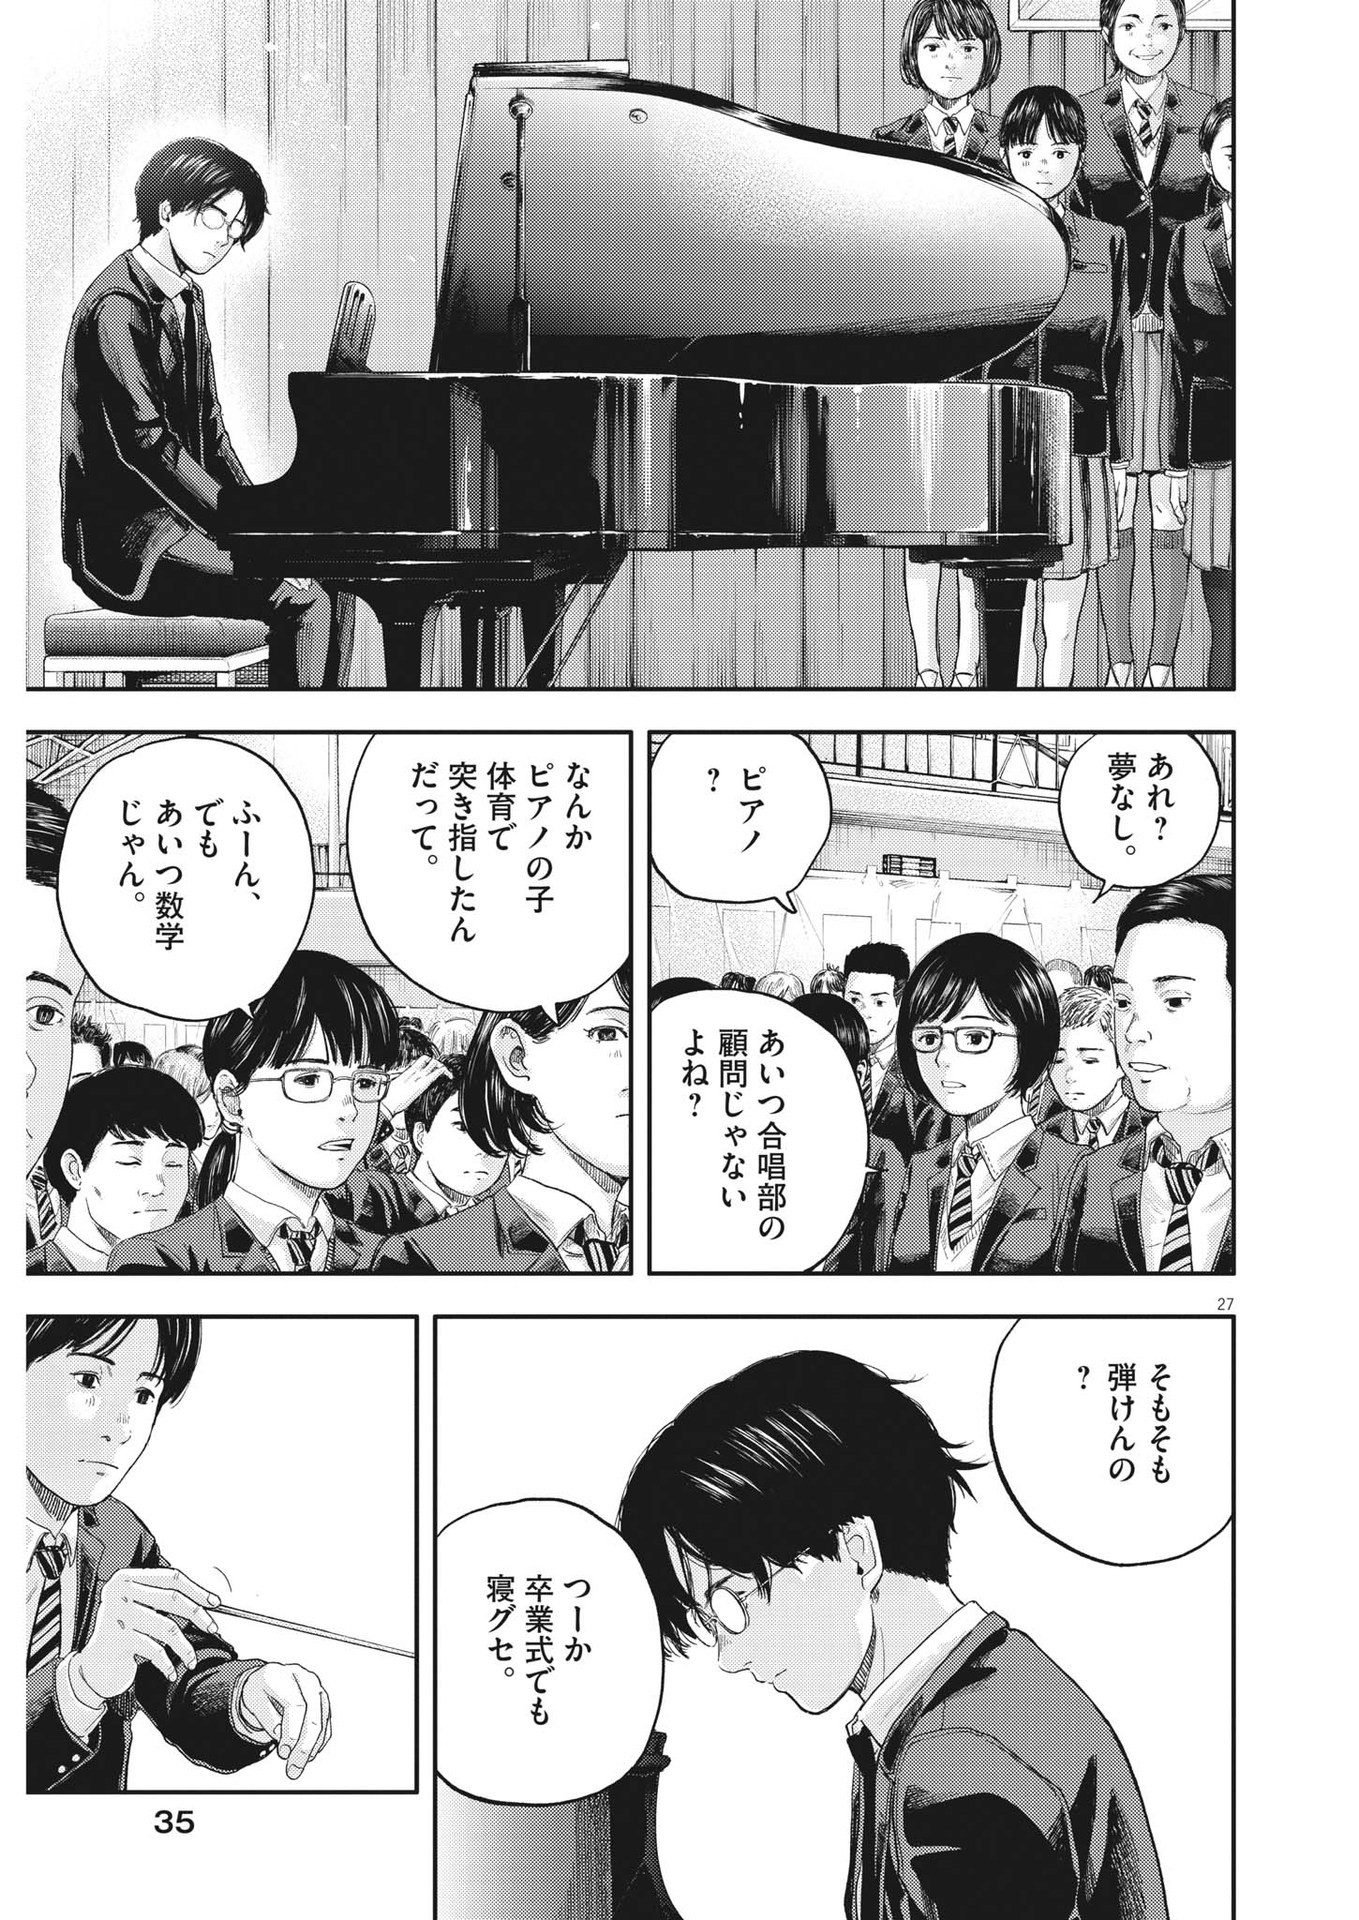 Yumenashi-sensei no Shinroshidou - Chapter 1 - Page 27